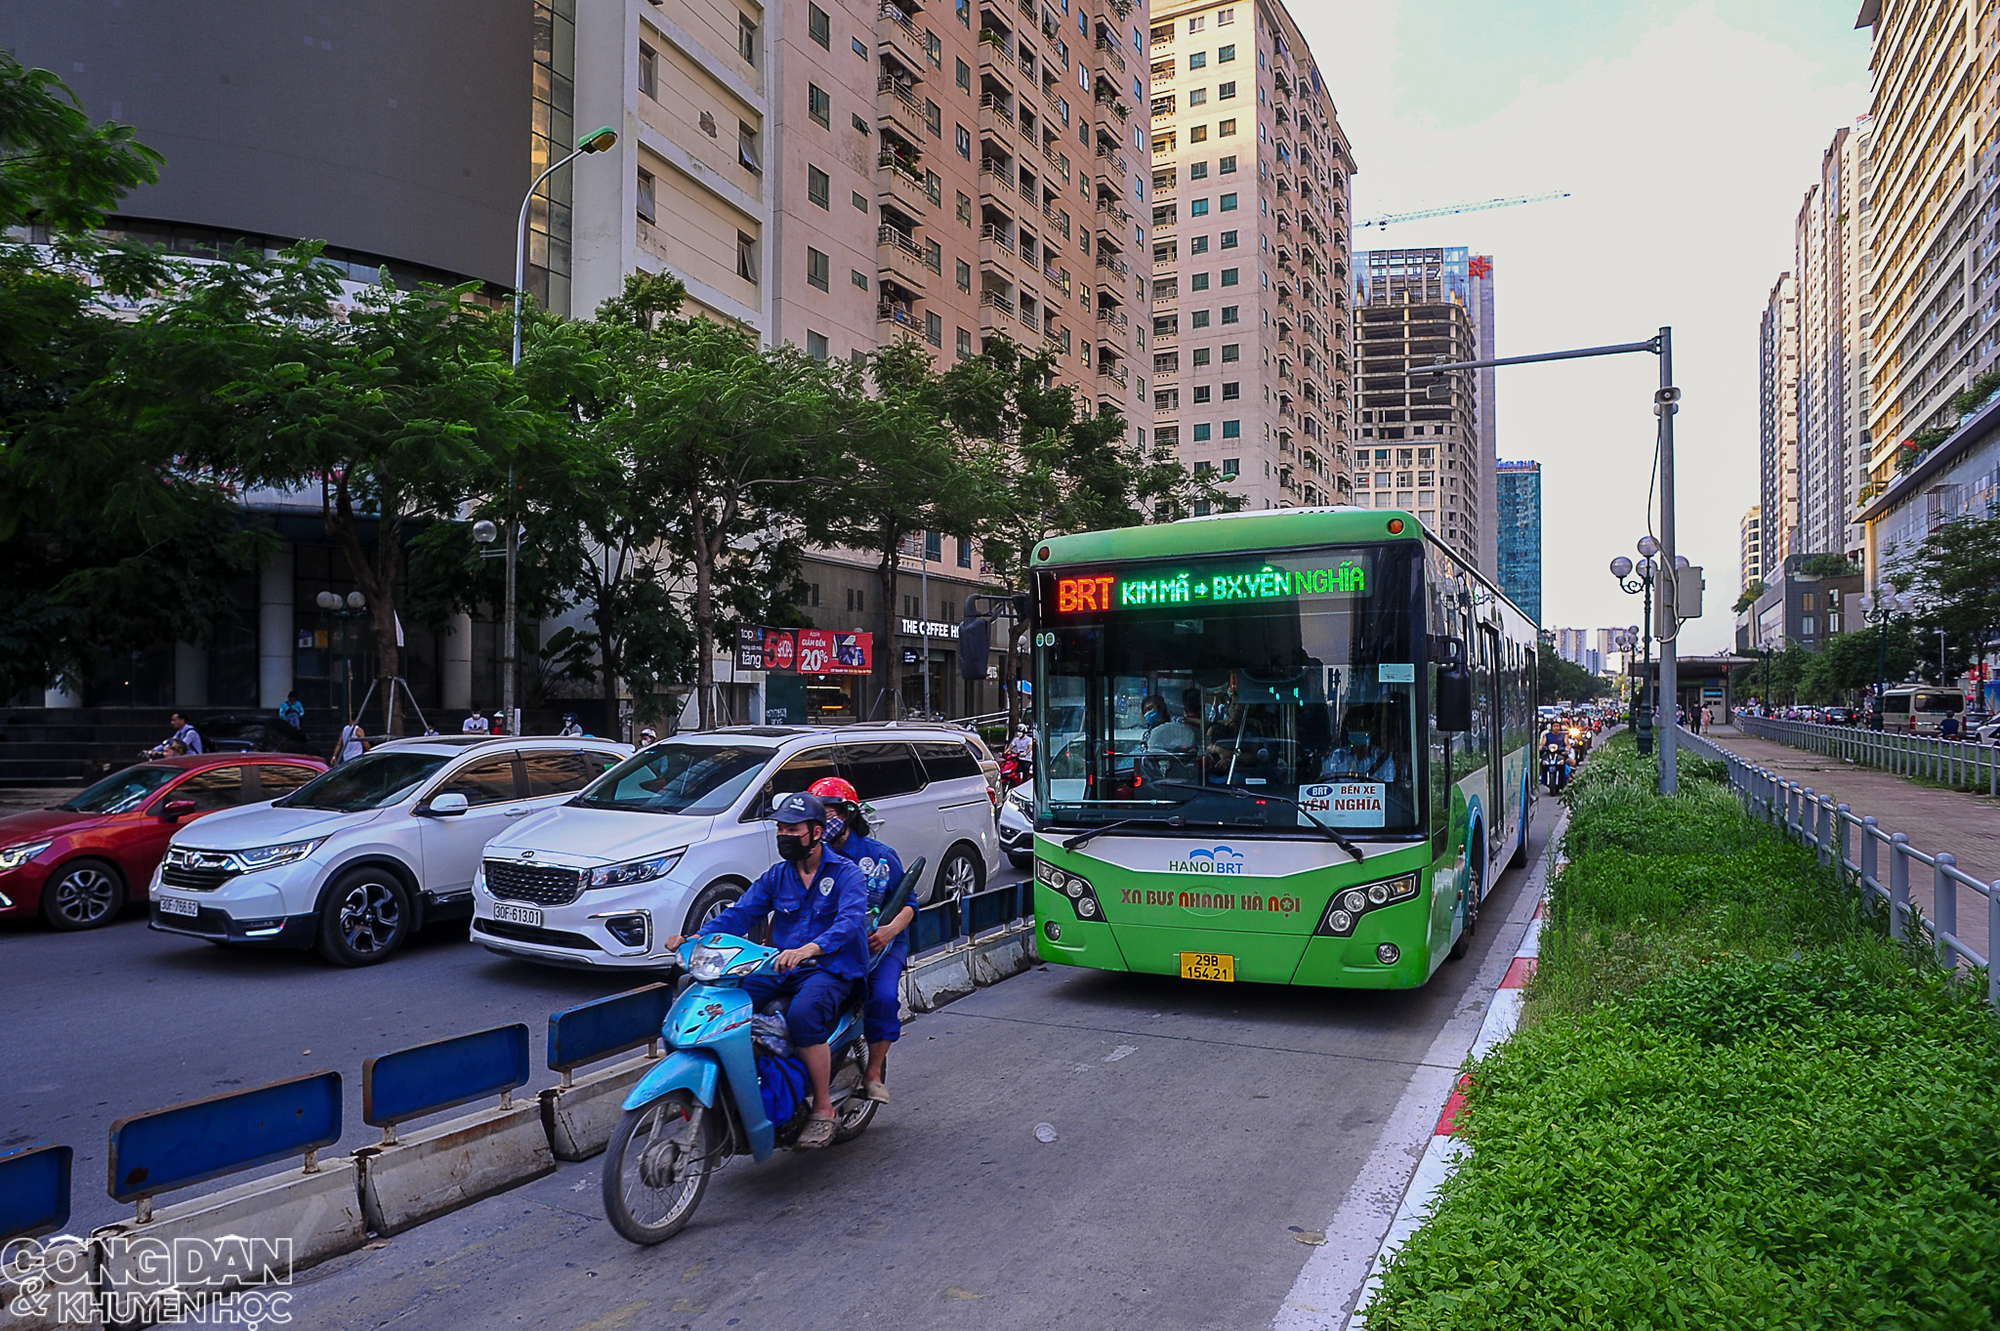 Hà Nội: Tuyến buýt nhanh BRT bị nhiều phương tiện lấn làn, nhà chờ đìu hiu - Ảnh 2.